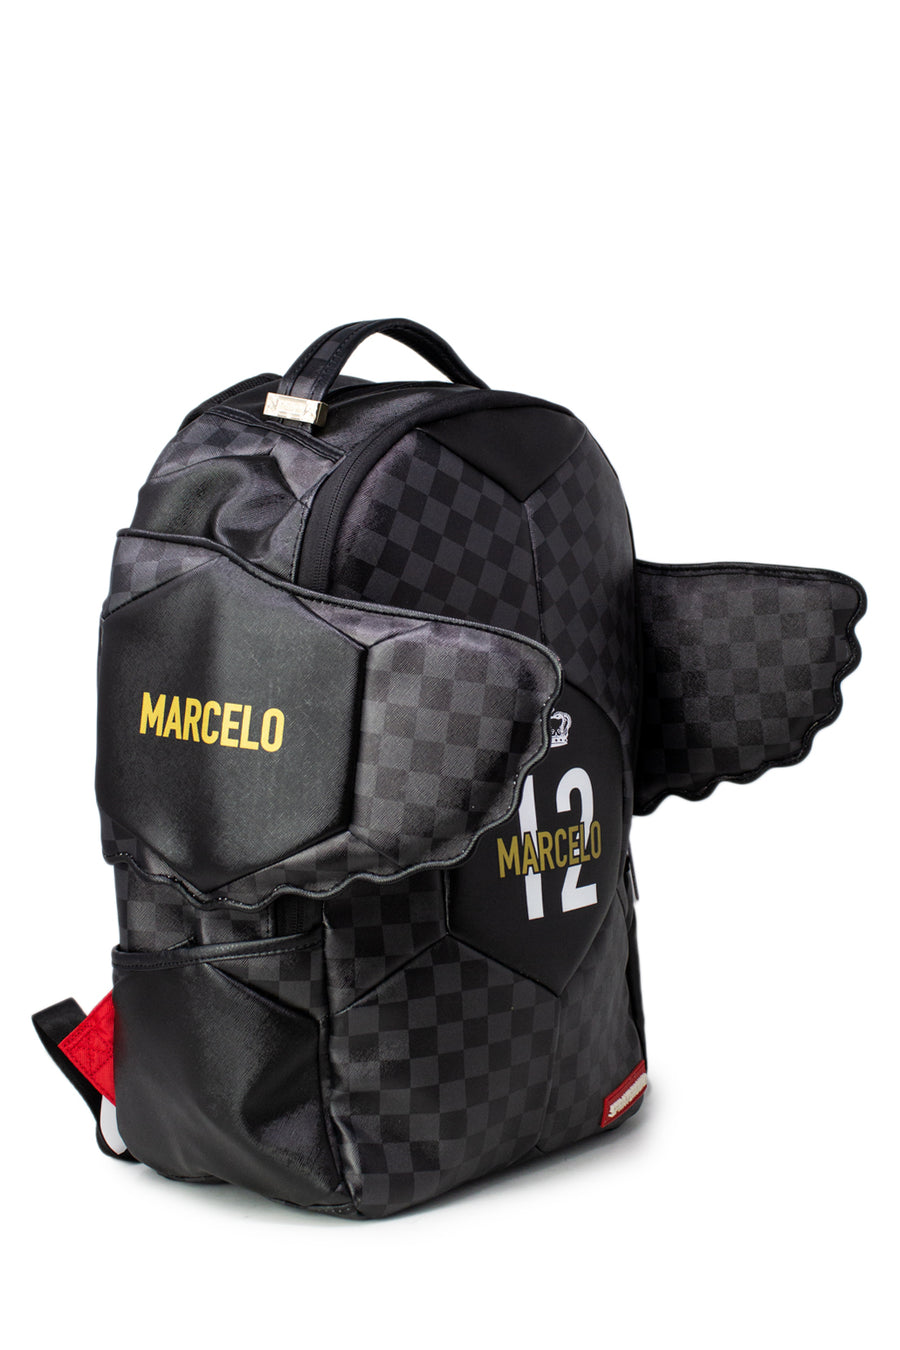 Sprayground Backpack MARCELO SOCCER KING Black